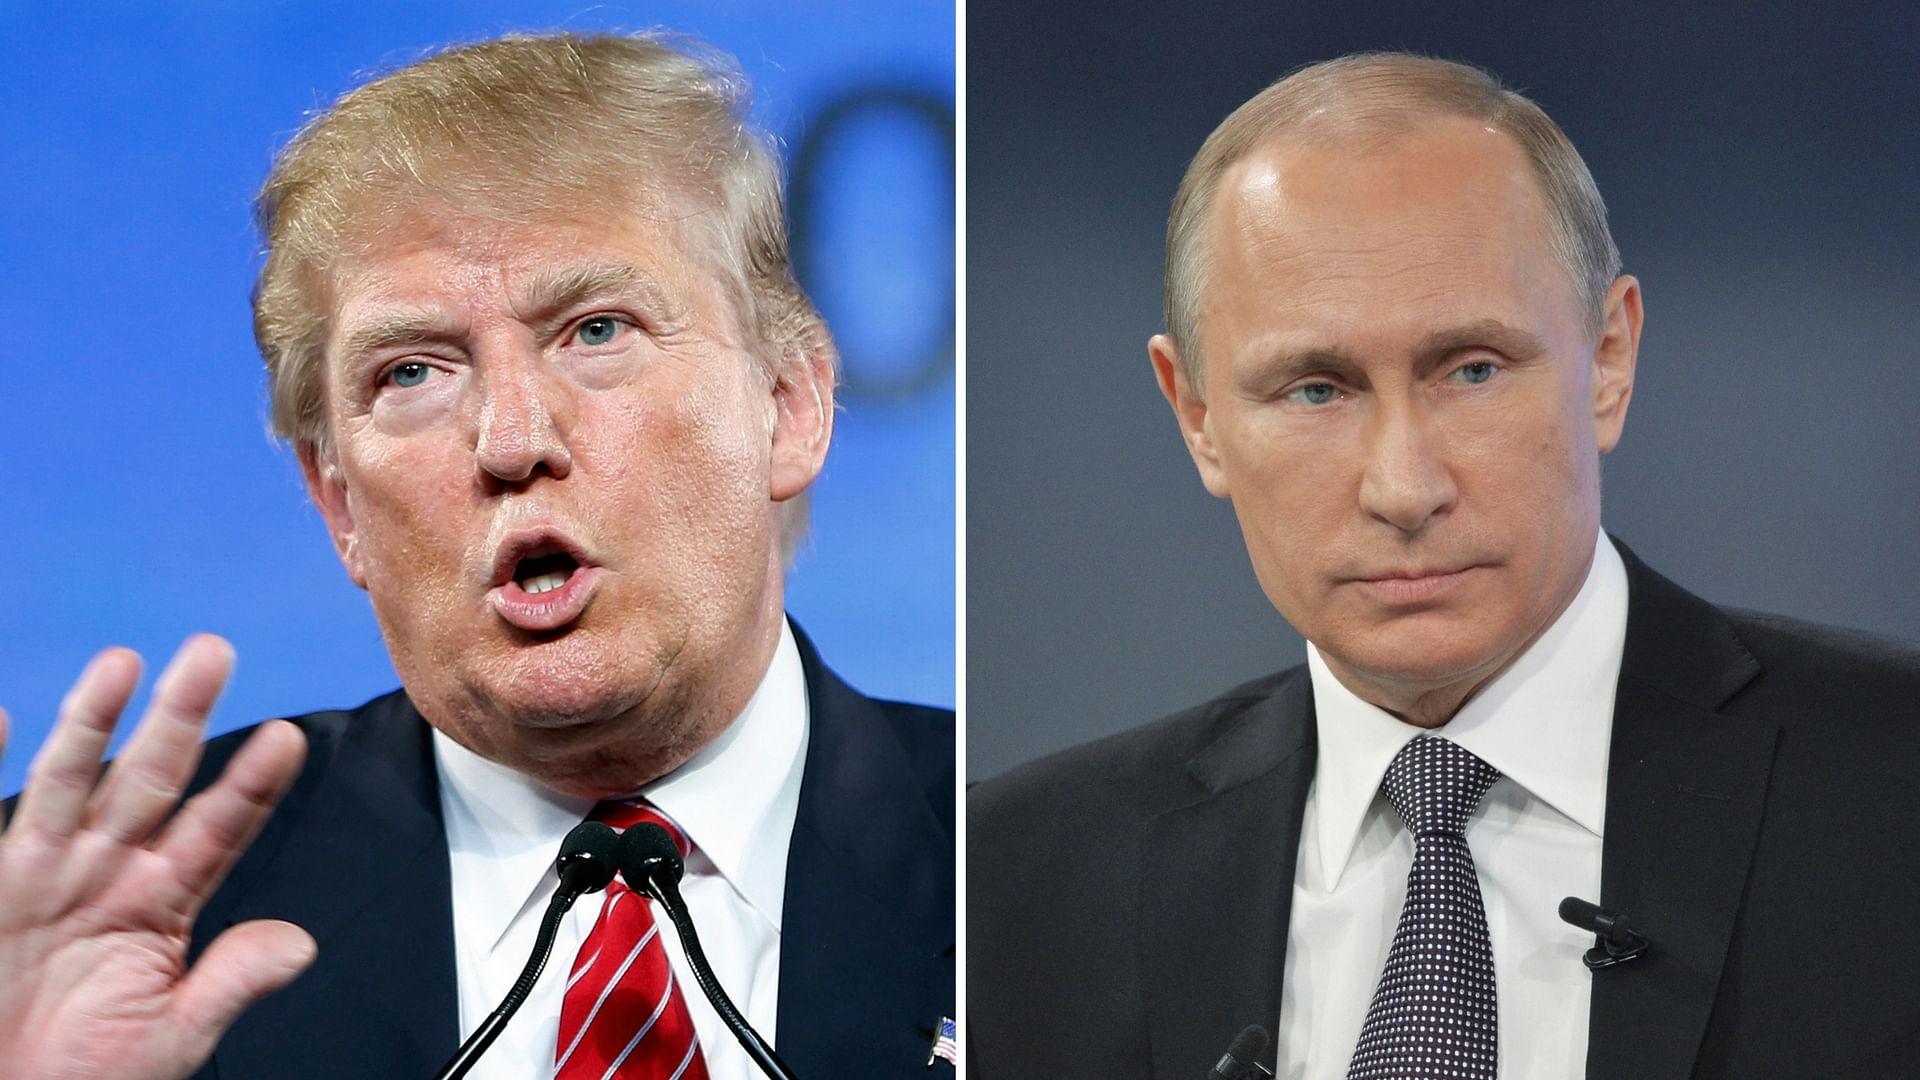 Donald Trump (left) and Vladimir Putin. (Photos: Reuters)